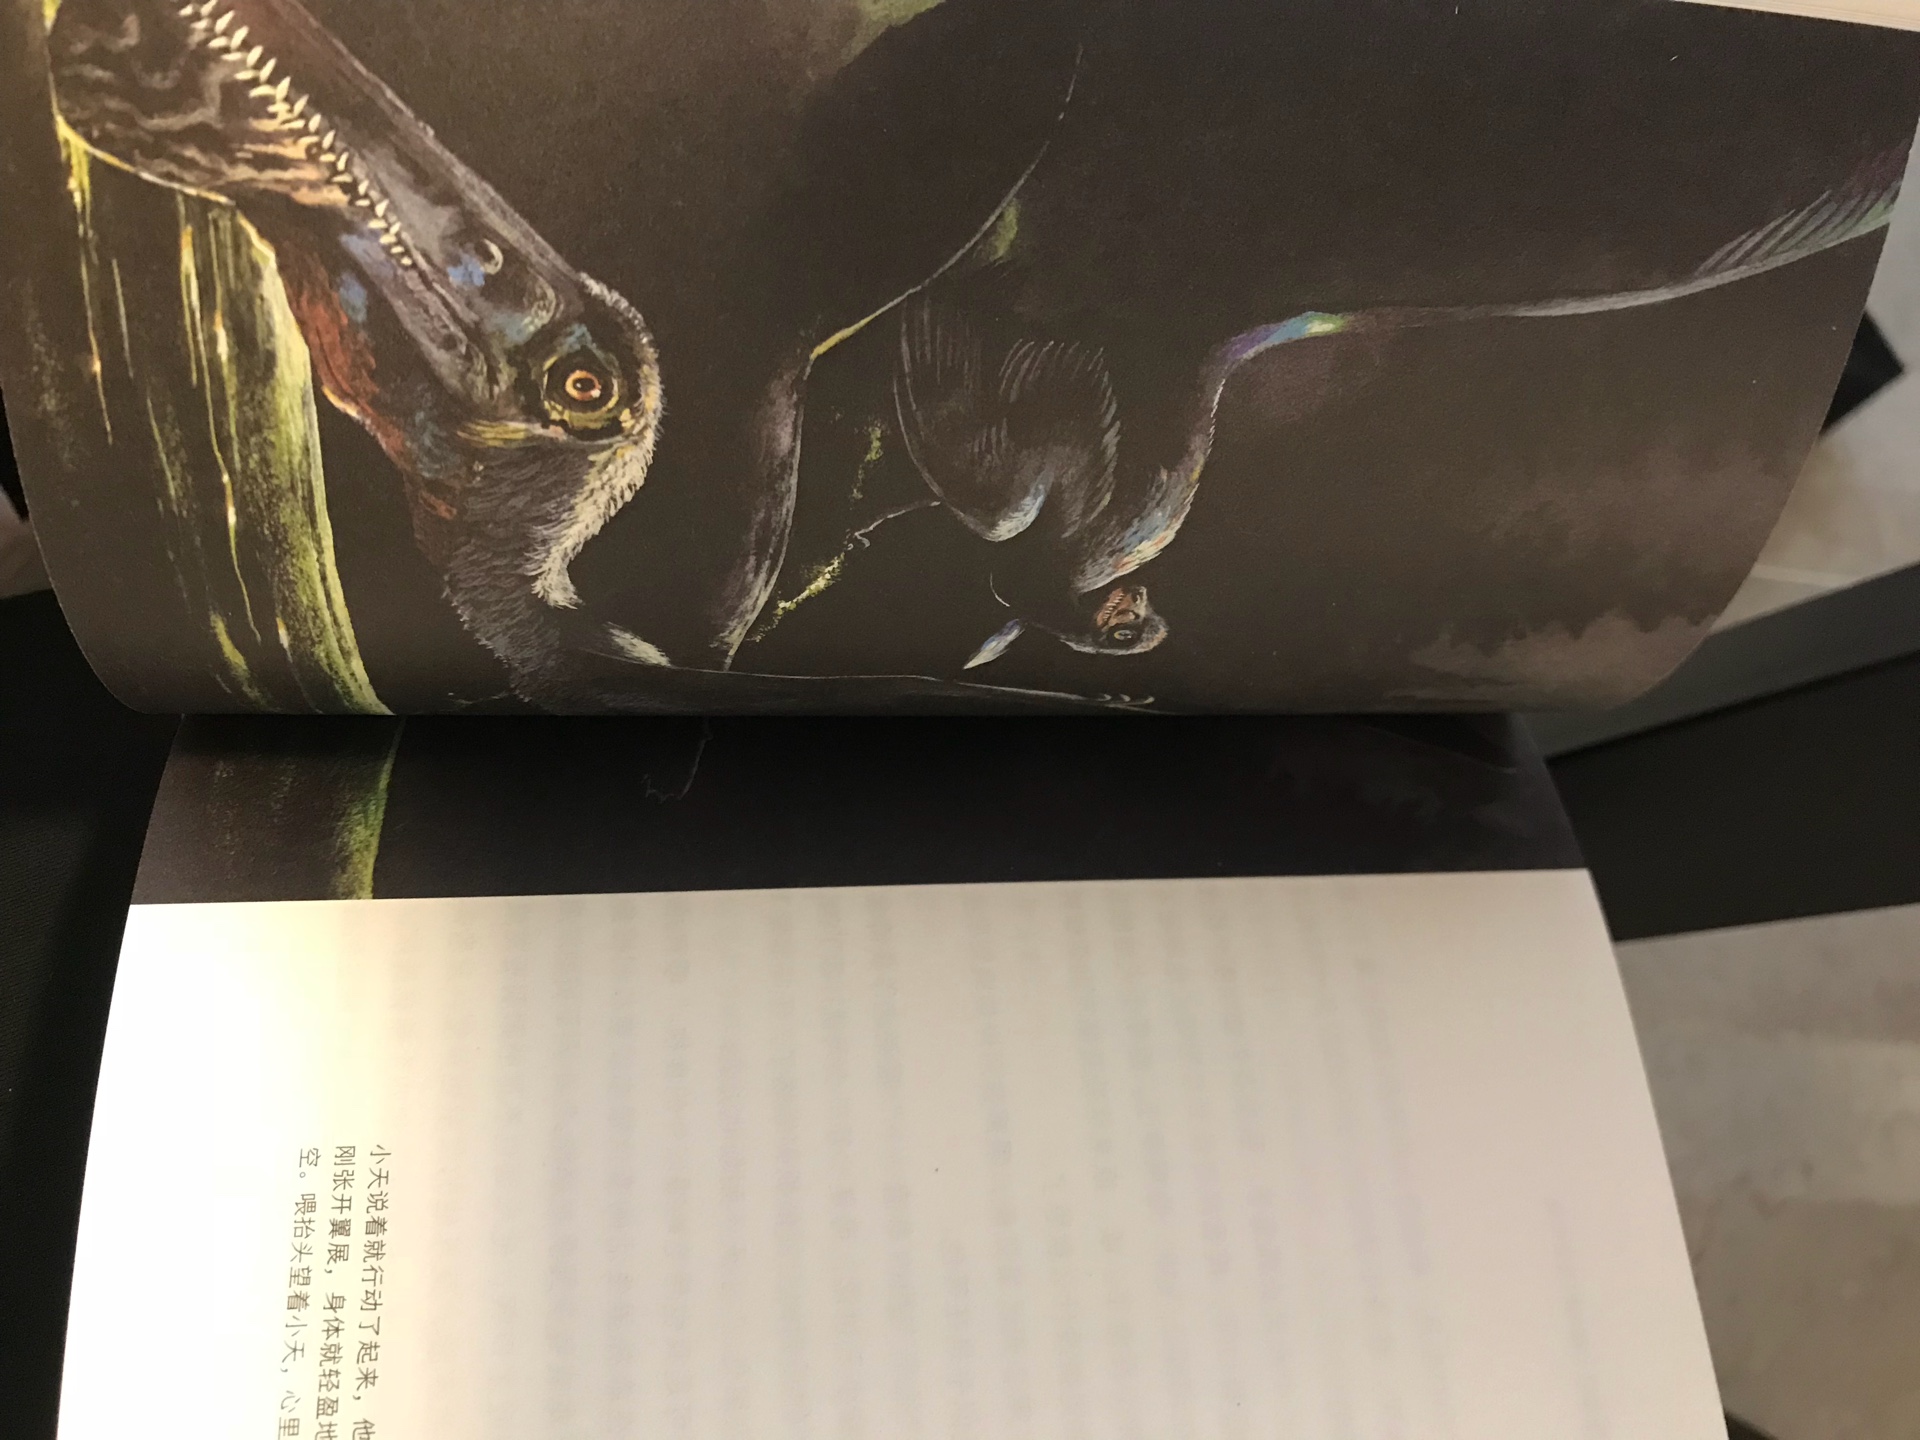 开本比较小啊，不过整套书的装帧设计看起来非常高大上，孩子很痴迷恐龙，除了百科，我想让他看看有思想内核的恐龙小说。